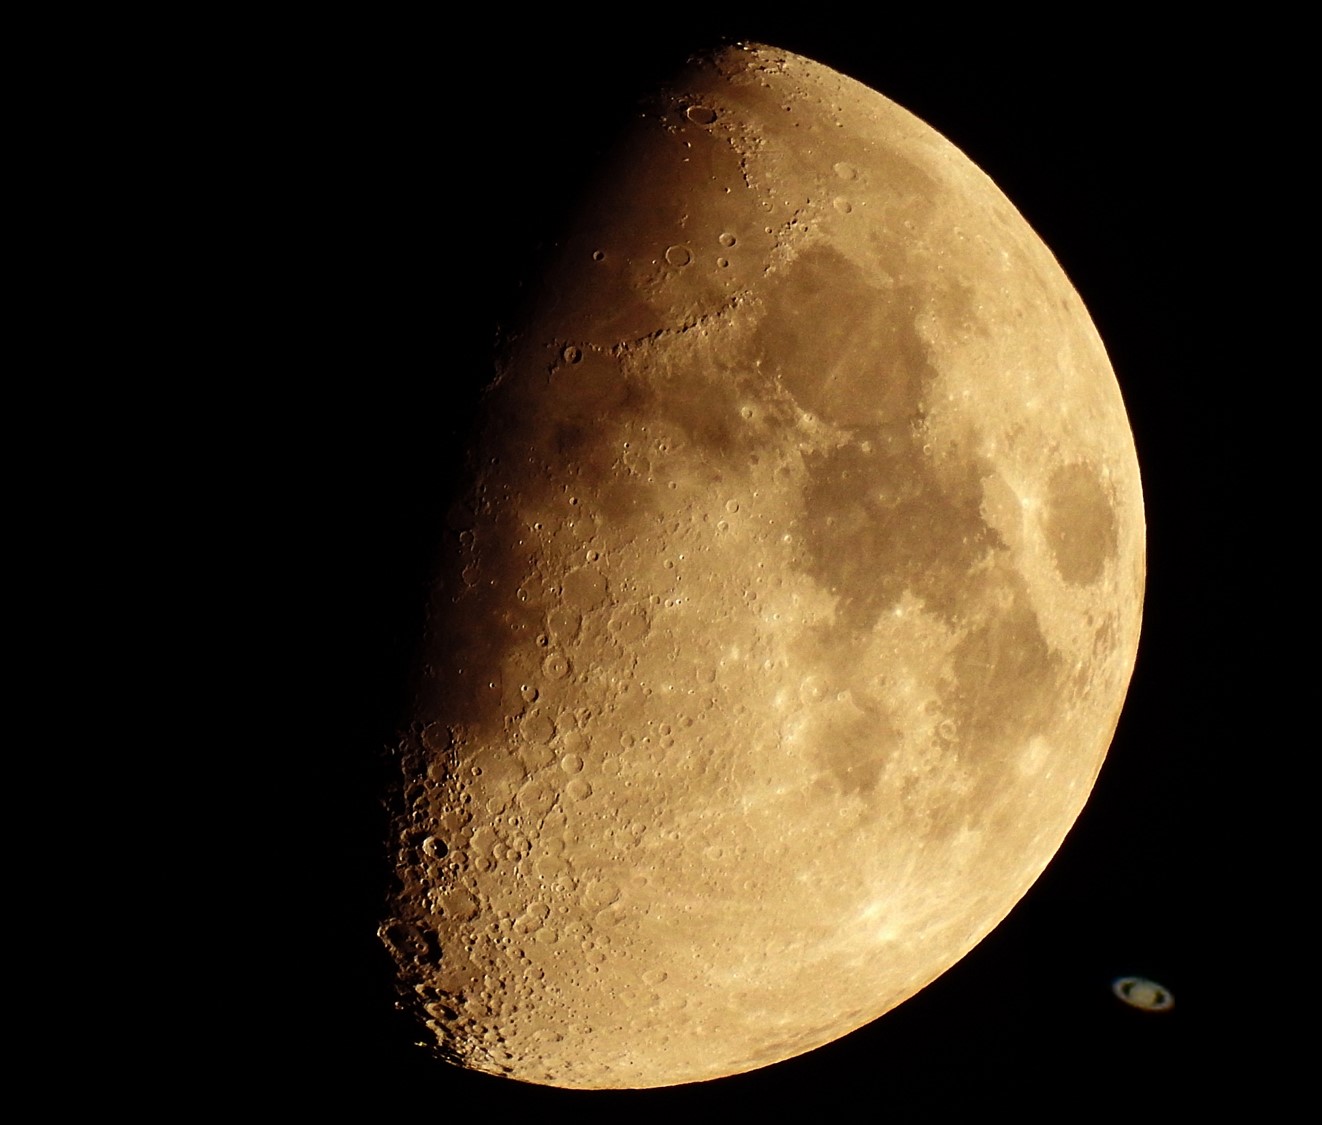 eeuwig Aardappelen Demon Play Moon Saturn 2 - Nikon Coolpix P900 - Photo Gallery - Cloudy Nights